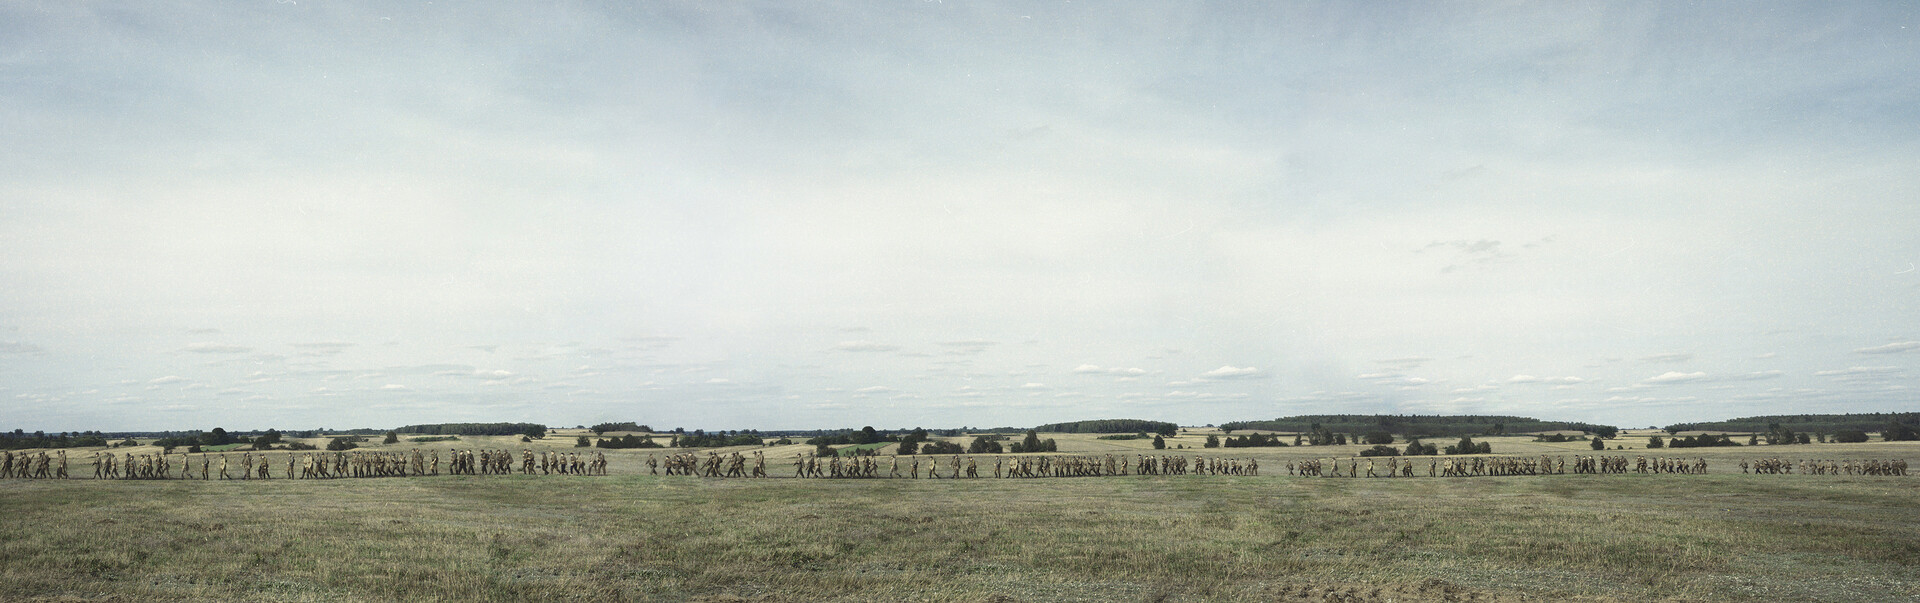  Fotografia Agnieszka Rayss Przemarsz z cyklu A więc wojna. Długie, panoramiczne zdjęcie przedstawiające przemarsz osób w wojskowych mundurach przez pole. 